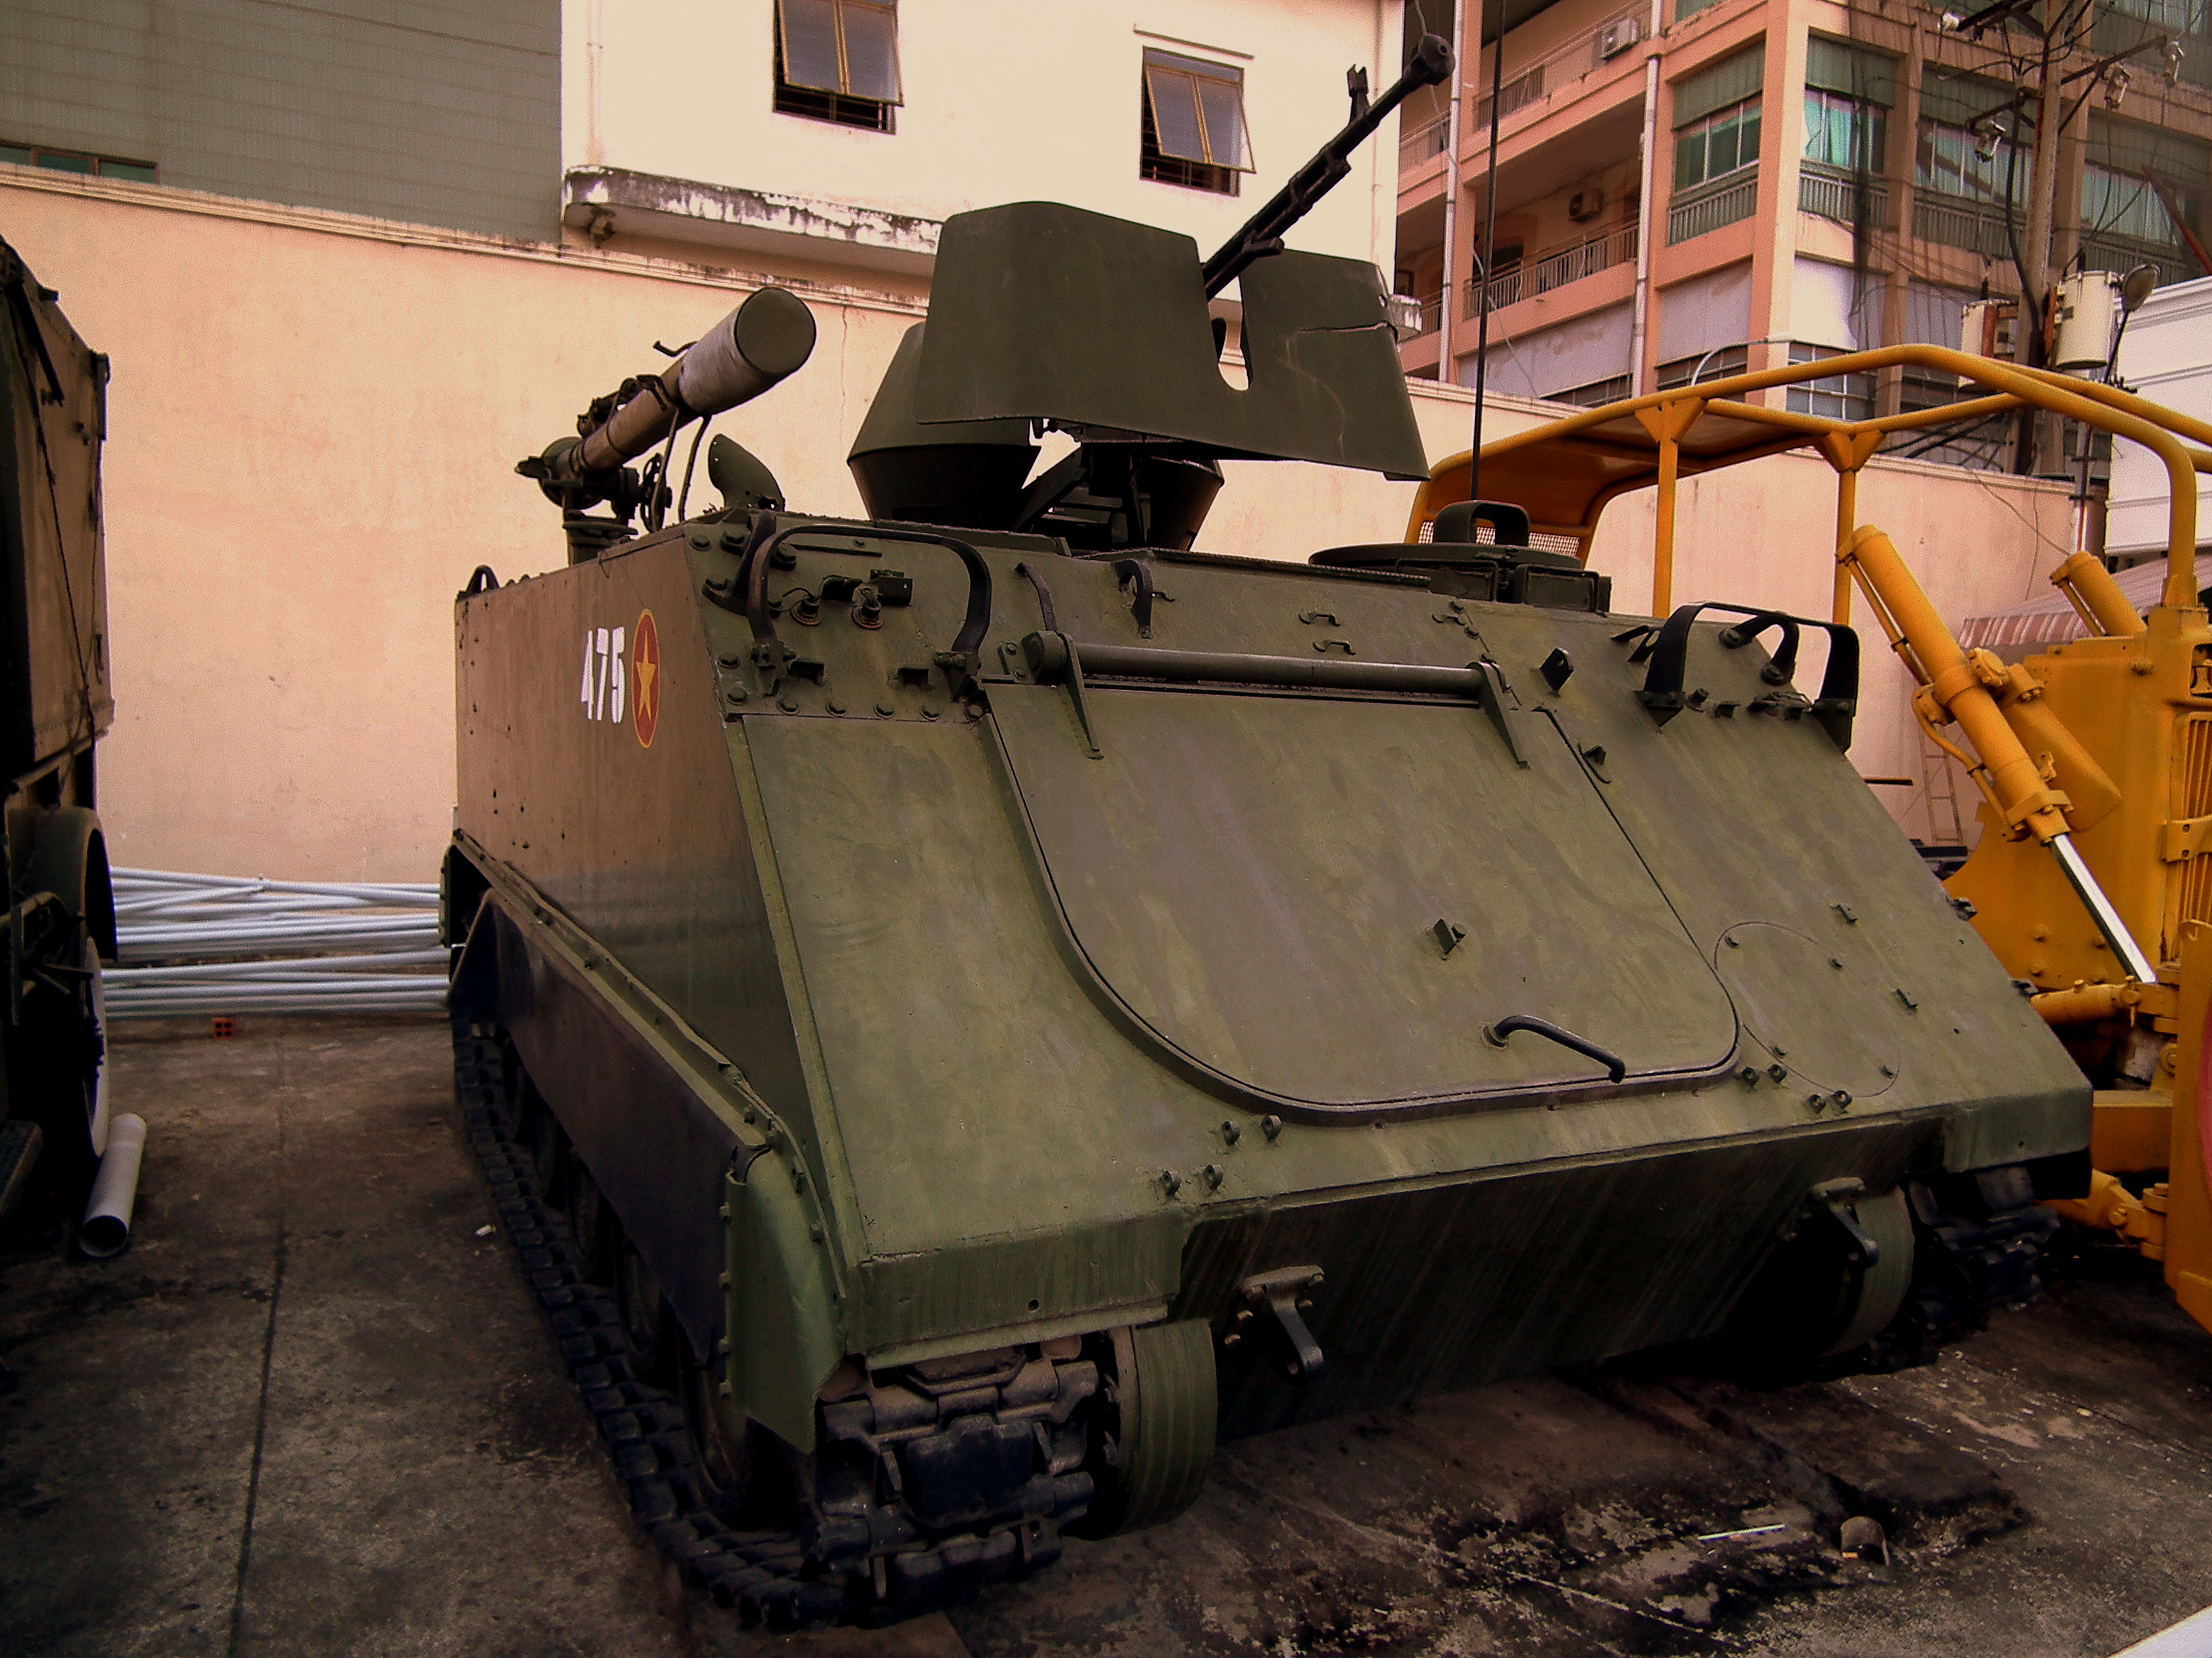 Bạn có biết gì về loại xe tăng M-113? Hãy xem ngay ảnh liên quan đến từ khóa này để tìm hiểu thêm về đặc điểm và sử dụng của loại xe này trong quân sự. Chắc chắn bạn sẽ bất ngờ trước sự linh hoạt và đa dạng của xe tăng này.